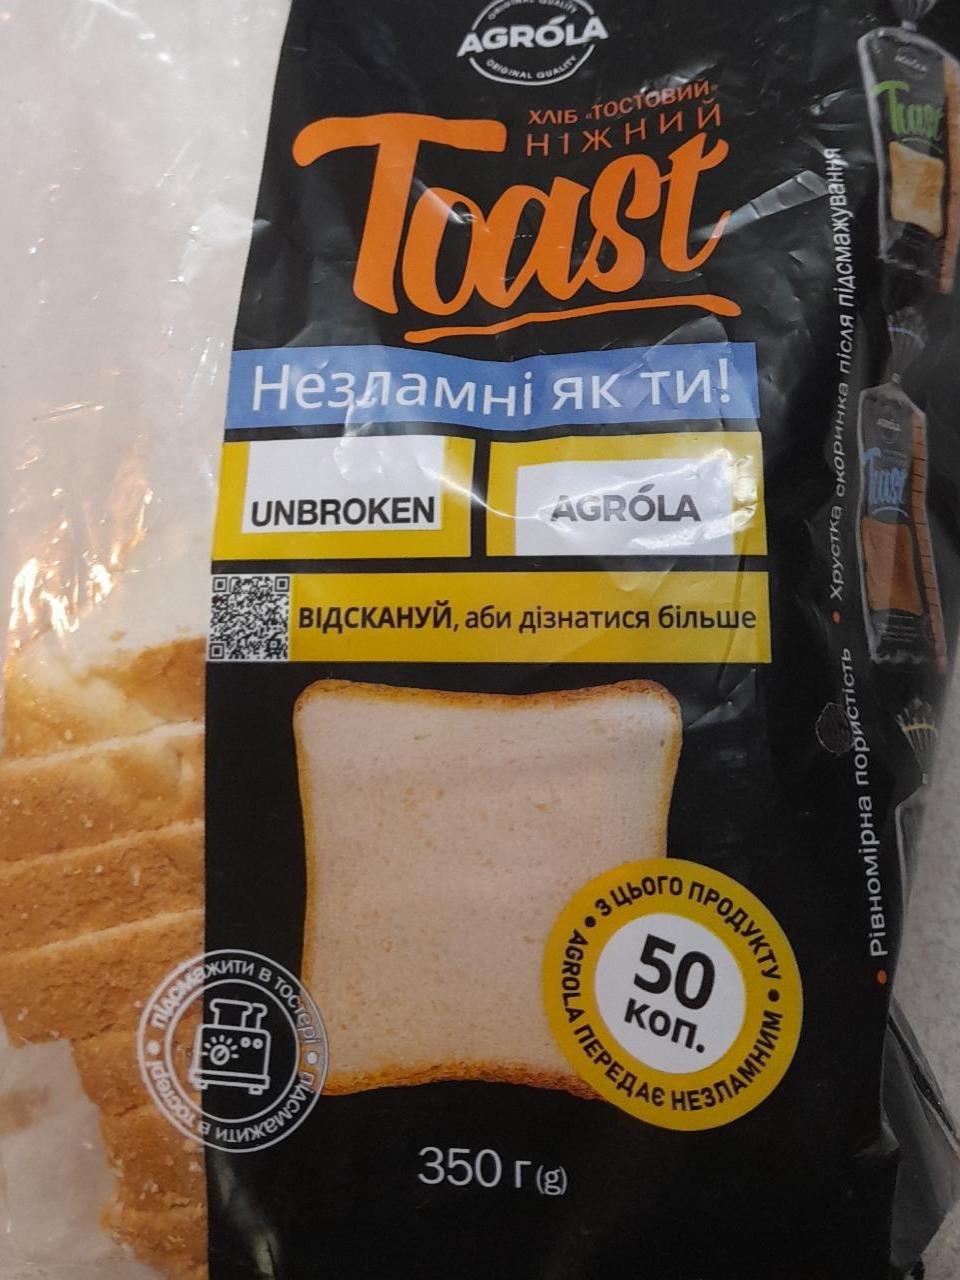 Фото - Хліб український тостовий нарізаний скибками Agrola